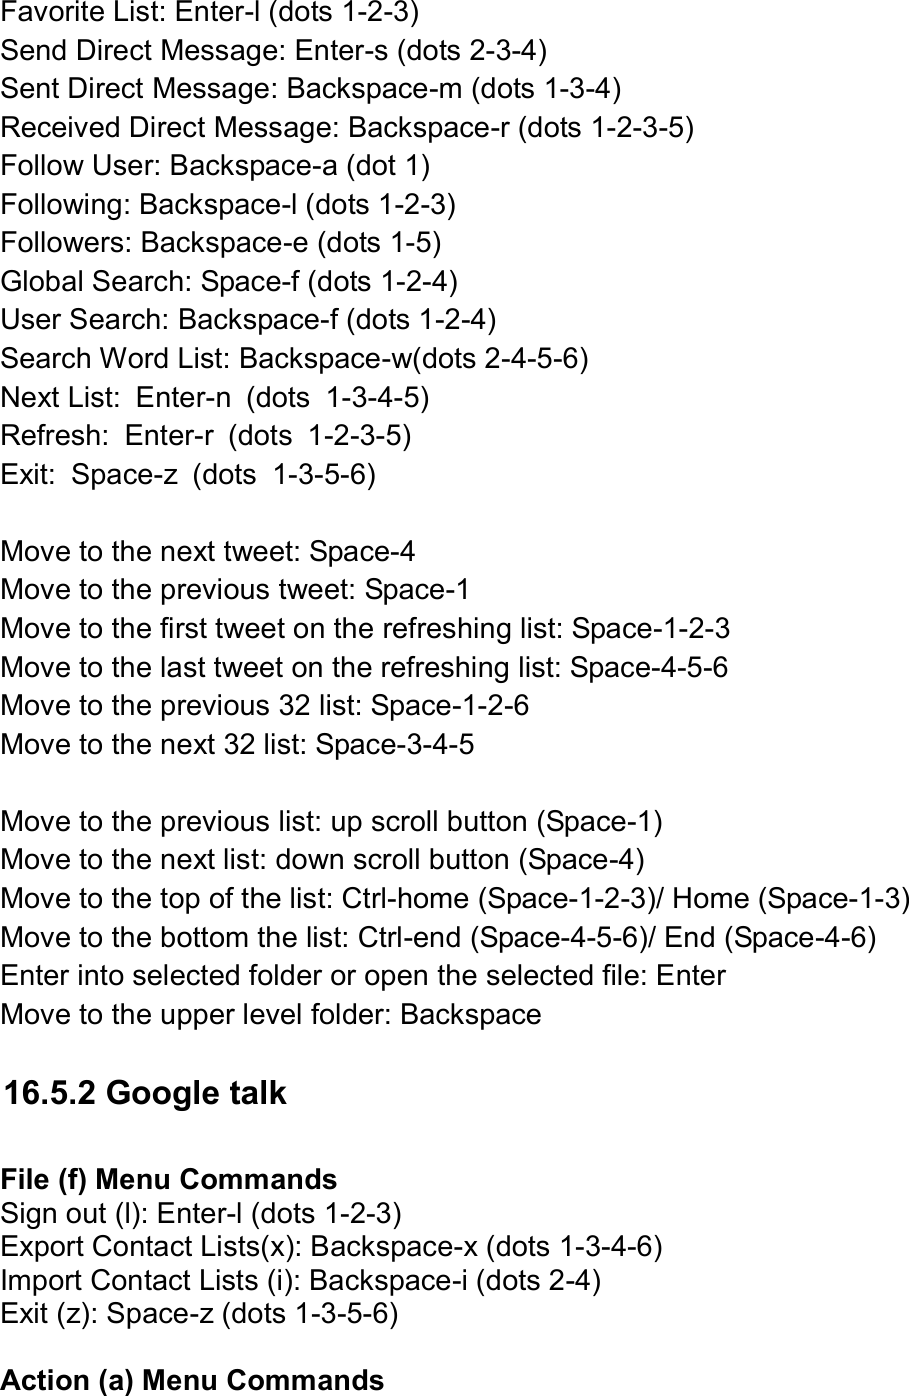  Favorite List: Enter-l (dots 1-2-3) Send Direct Message: Enter-s (dots 2-3-4) Sent Direct Message: Backspace-m (dots 1-3-4) Received Direct Message: Backspace-r (dots 1-2-3-5) Follow User: Backspace-a (dot 1) Following: Backspace-l (dots 1-2-3) Followers: Backspace-e (dots 1-5) Global Search: Space-f (dots 1-2-4) User Search: Backspace-f (dots 1-2-4) Search Word List: Backspace-w(dots 2-4-5-6)   Next List:  Enter-n  (dots  1-3-4-5) Refresh:  Enter-r  (dots  1-2-3-5) Exit:  Space-z  (dots  1-3-5-6)  Move to the next tweet: Space-4   Move to the previous tweet: Space-1 Move to the first tweet on the refreshing list: Space-1-2-3 Move to the last tweet on the refreshing list: Space-4-5-6 Move to the previous 32 list: Space-1-2-6 Move to the next 32 list: Space-3-4-5  Move to the previous list: up scroll button (Space-1) Move to the next list: down scroll button (Space-4) Move to the top of the list: Ctrl-home (Space-1-2-3)/ Home (Space-1-3) Move to the bottom the list: Ctrl-end (Space-4-5-6)/ End (Space-4-6) Enter into selected folder or open the selected file: Enter Move to the upper level folder: Backspace  16.5.2 Google talk  File (f) Menu Commands Sign out (l): Enter-l (dots 1-2-3) Export Contact Lists(x): Backspace-x (dots 1-3-4-6) Import Contact Lists (i): Backspace-i (dots 2-4) Exit (z): Space-z (dots 1-3-5-6)  Action (a) Menu Commands 